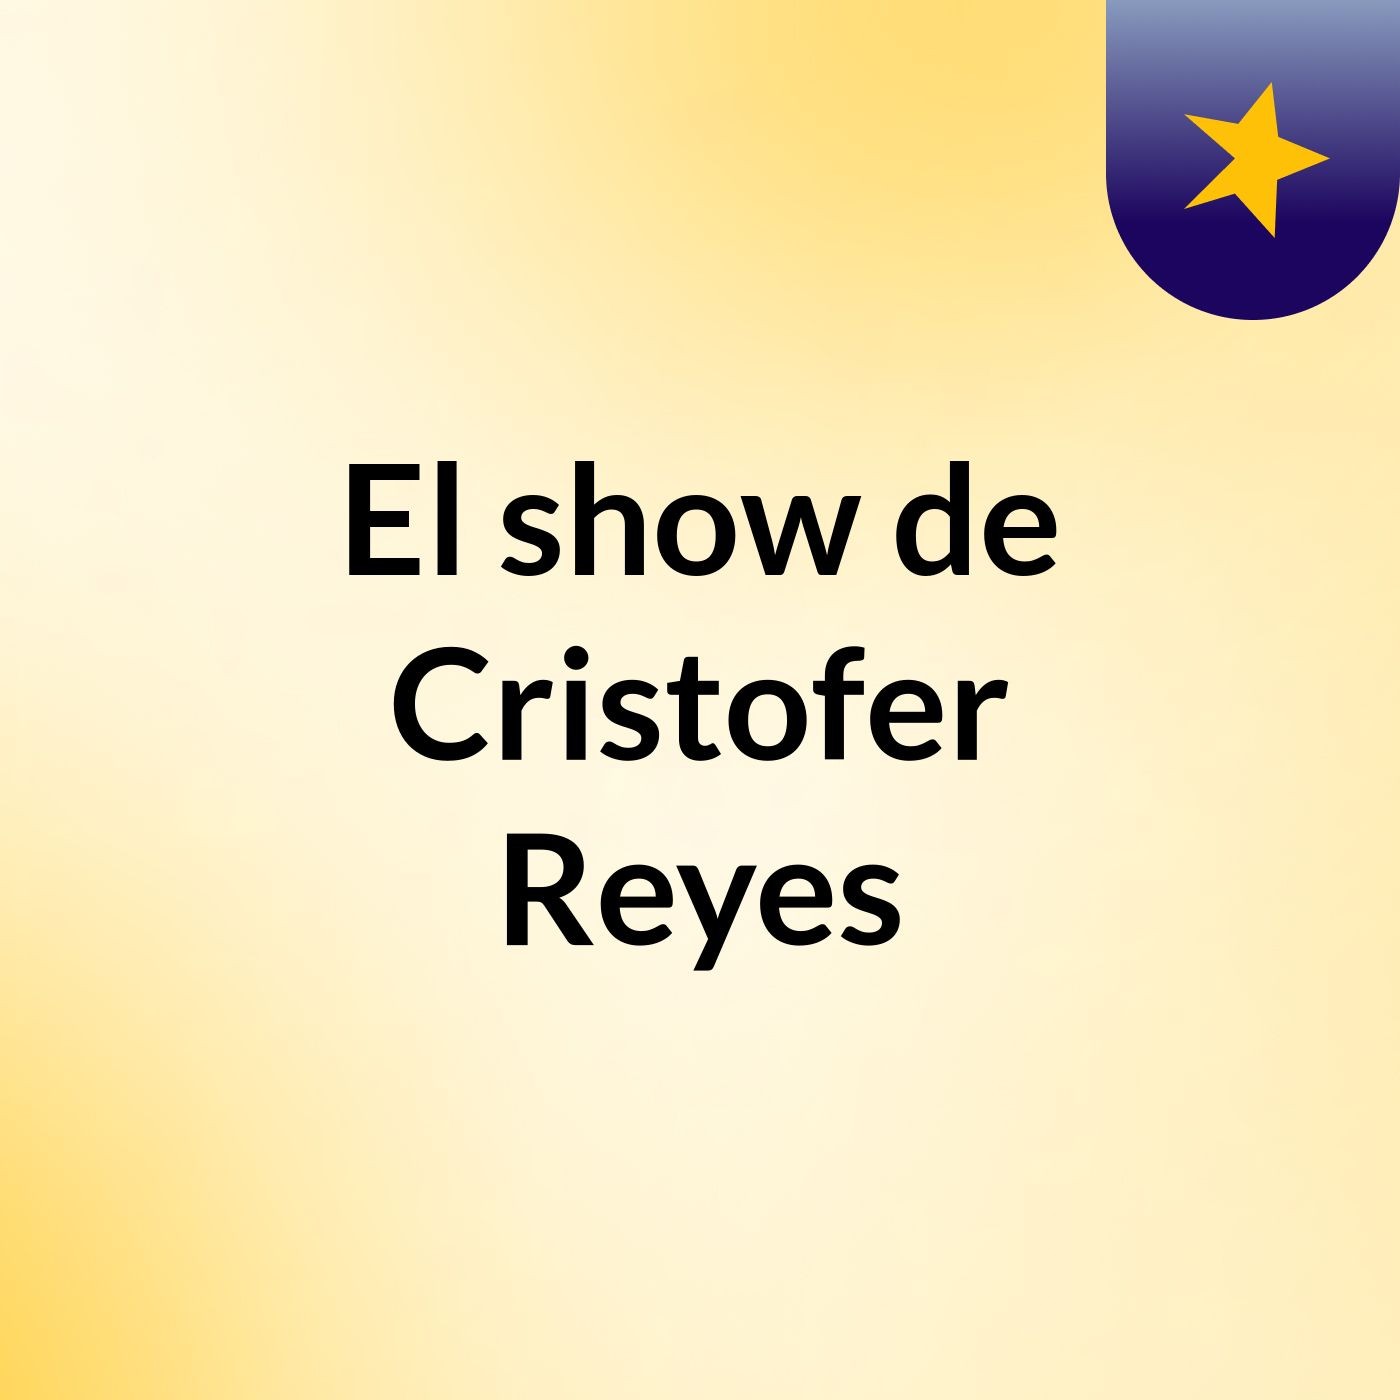 Episodio 3 - El show de Cristofer Reyes